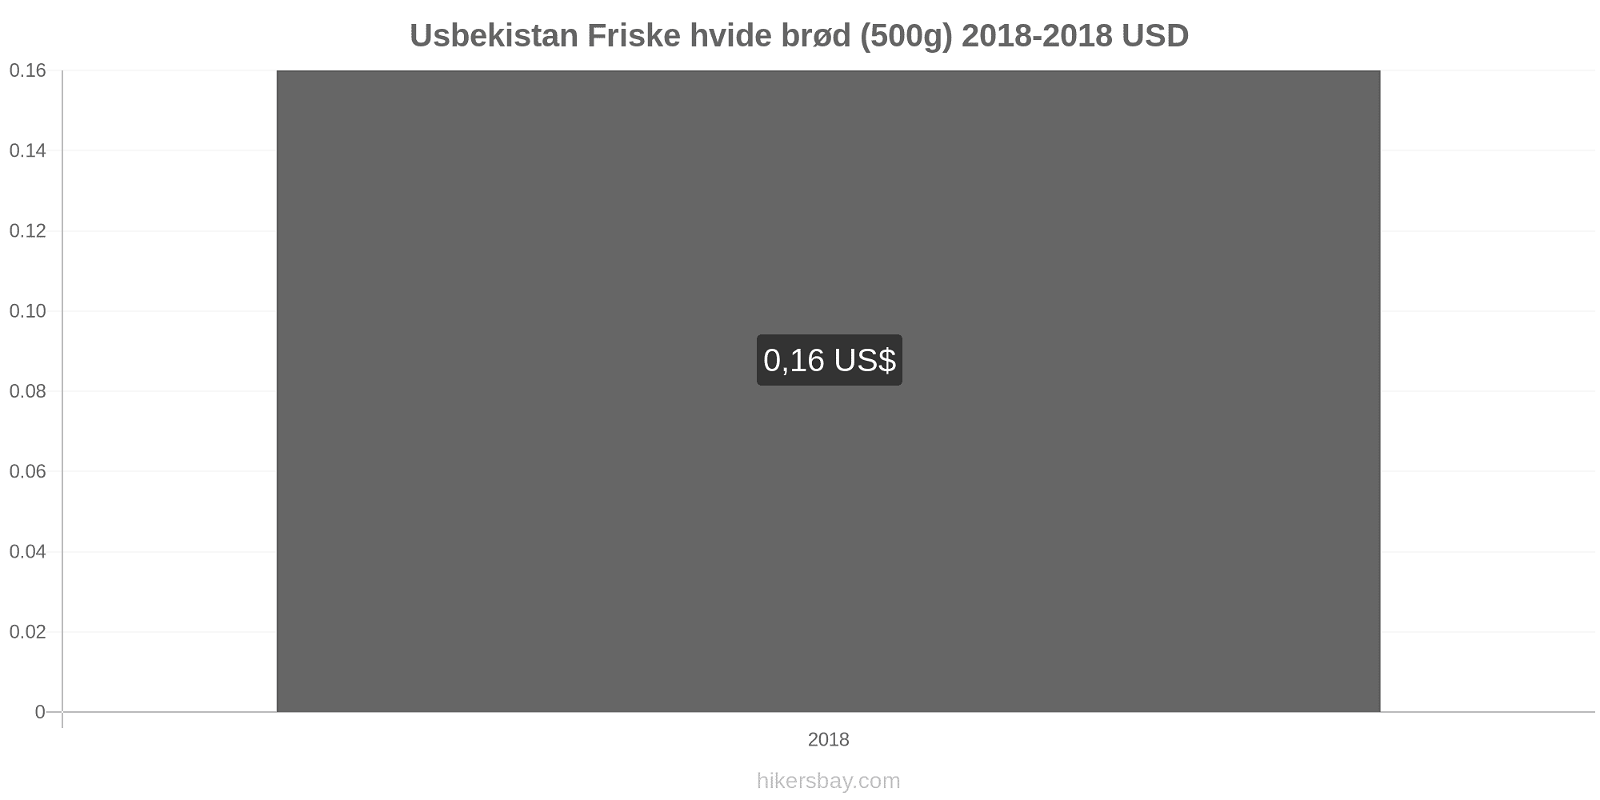 Usbekistan prisændringer Friske hvide brød (500g) hikersbay.com